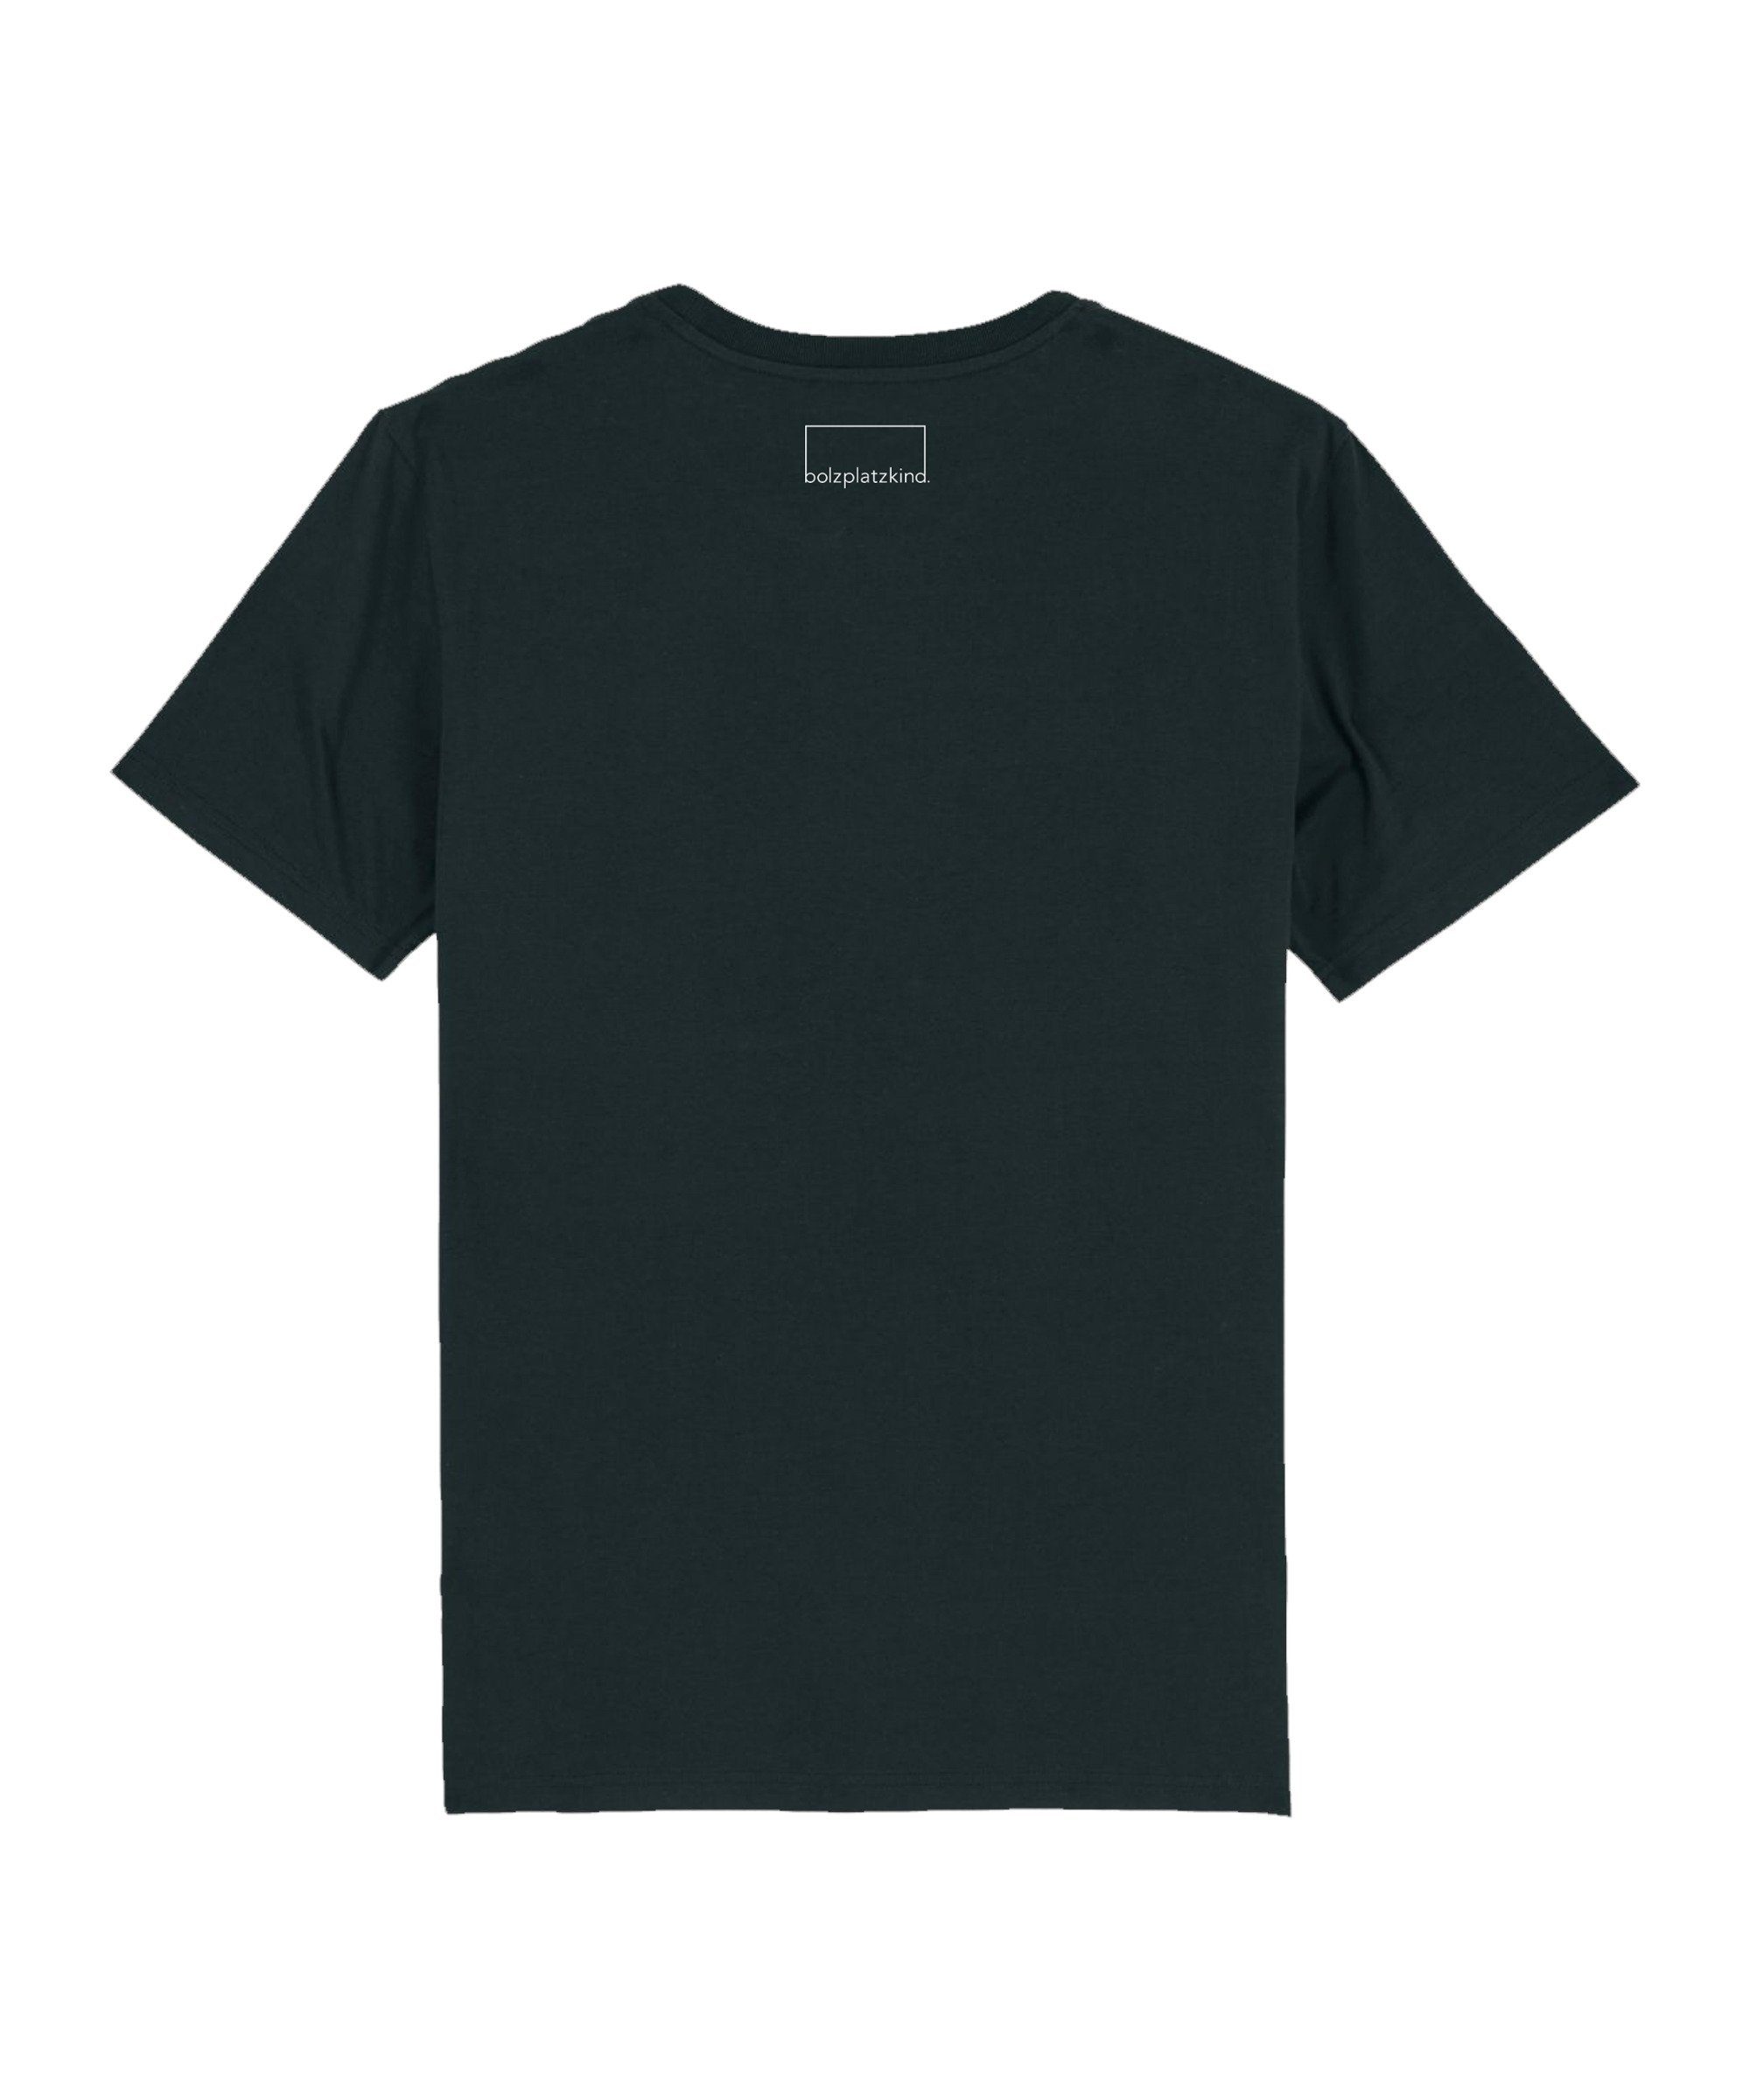 Nachhaltiges T-Shirt schwarz "Karrieremodus" Produkt Bolzplatzkind T-Shirt